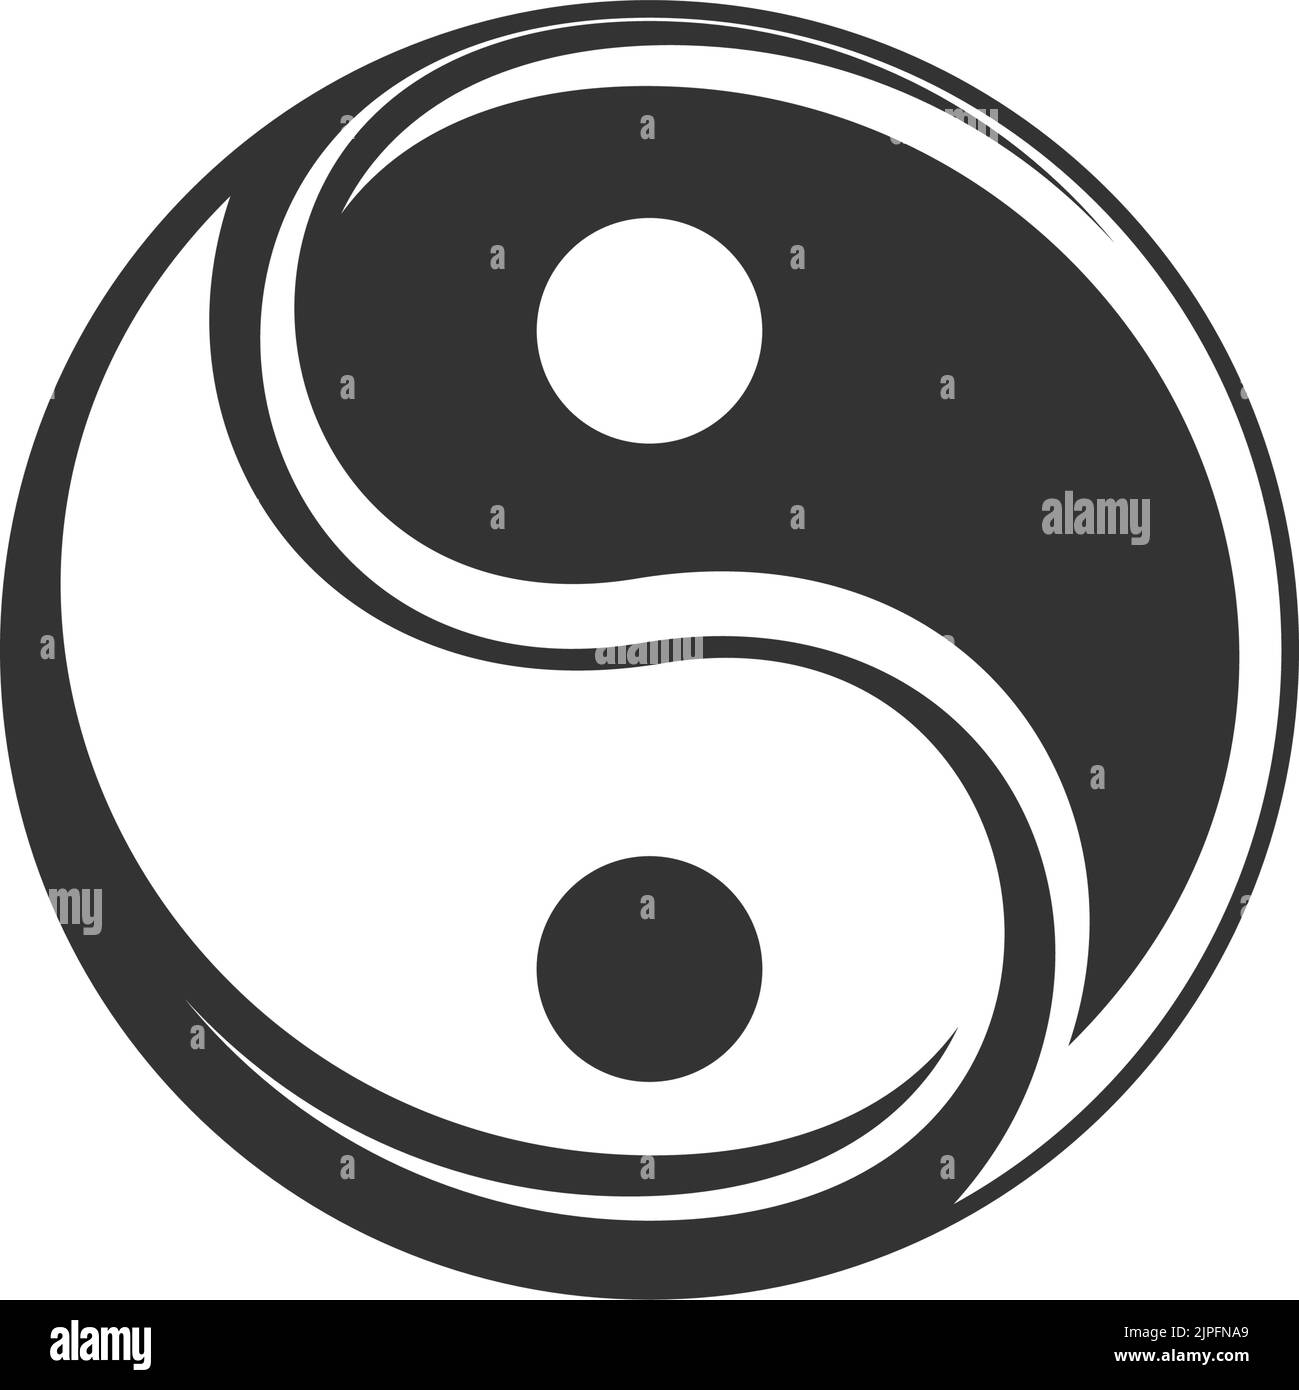 Simbolo del Buddismo isolato segno yin yang. Vettore negativo e positivo, dualismo di buio e luminoso Illustrazione Vettoriale